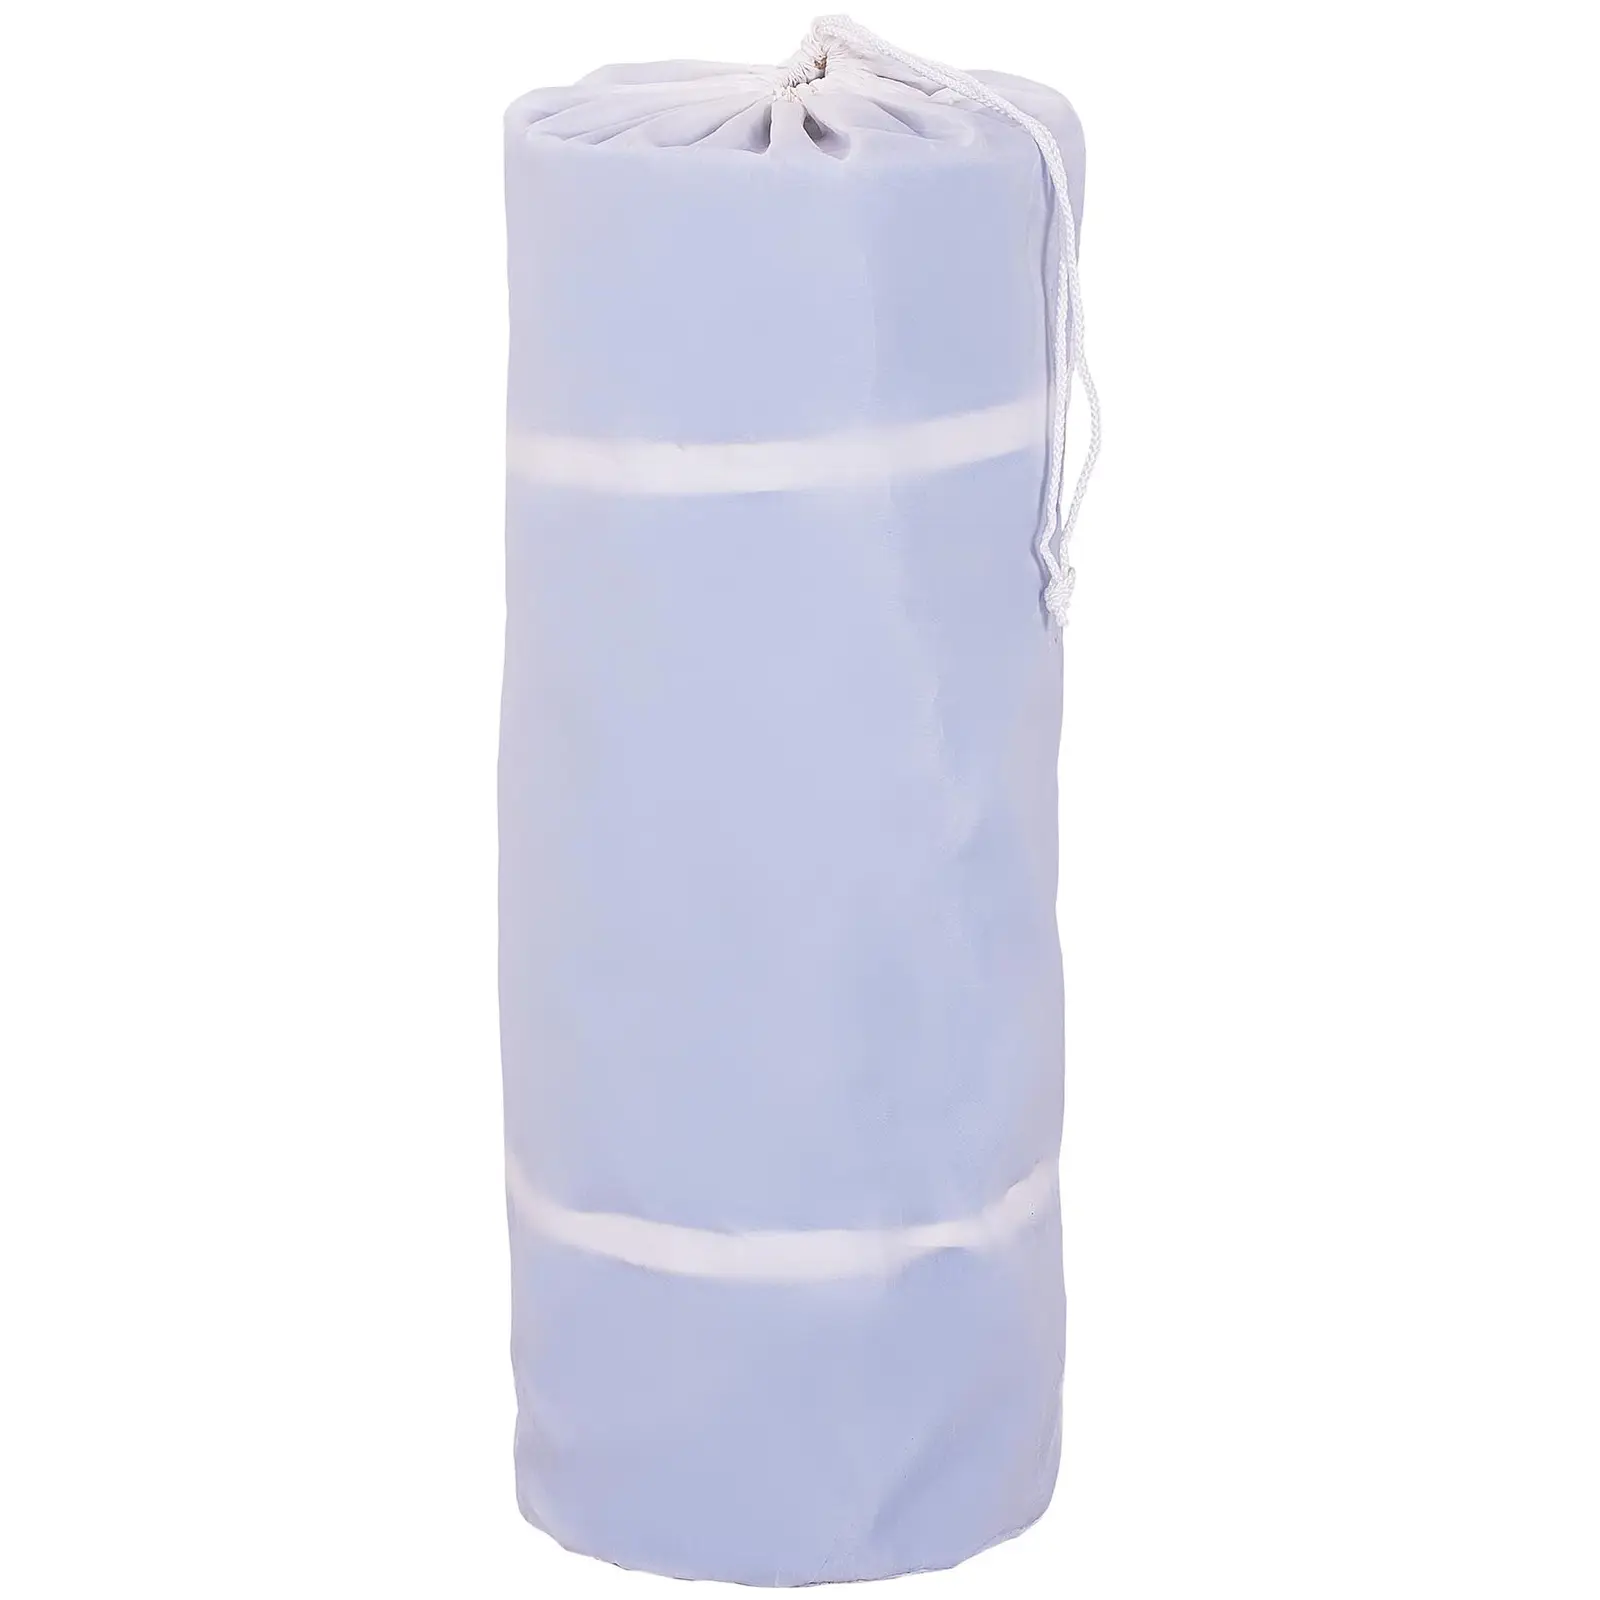 Nafukovacia žinenka - 300 x 100 x 20 cm - 150 kg - modrá/biela